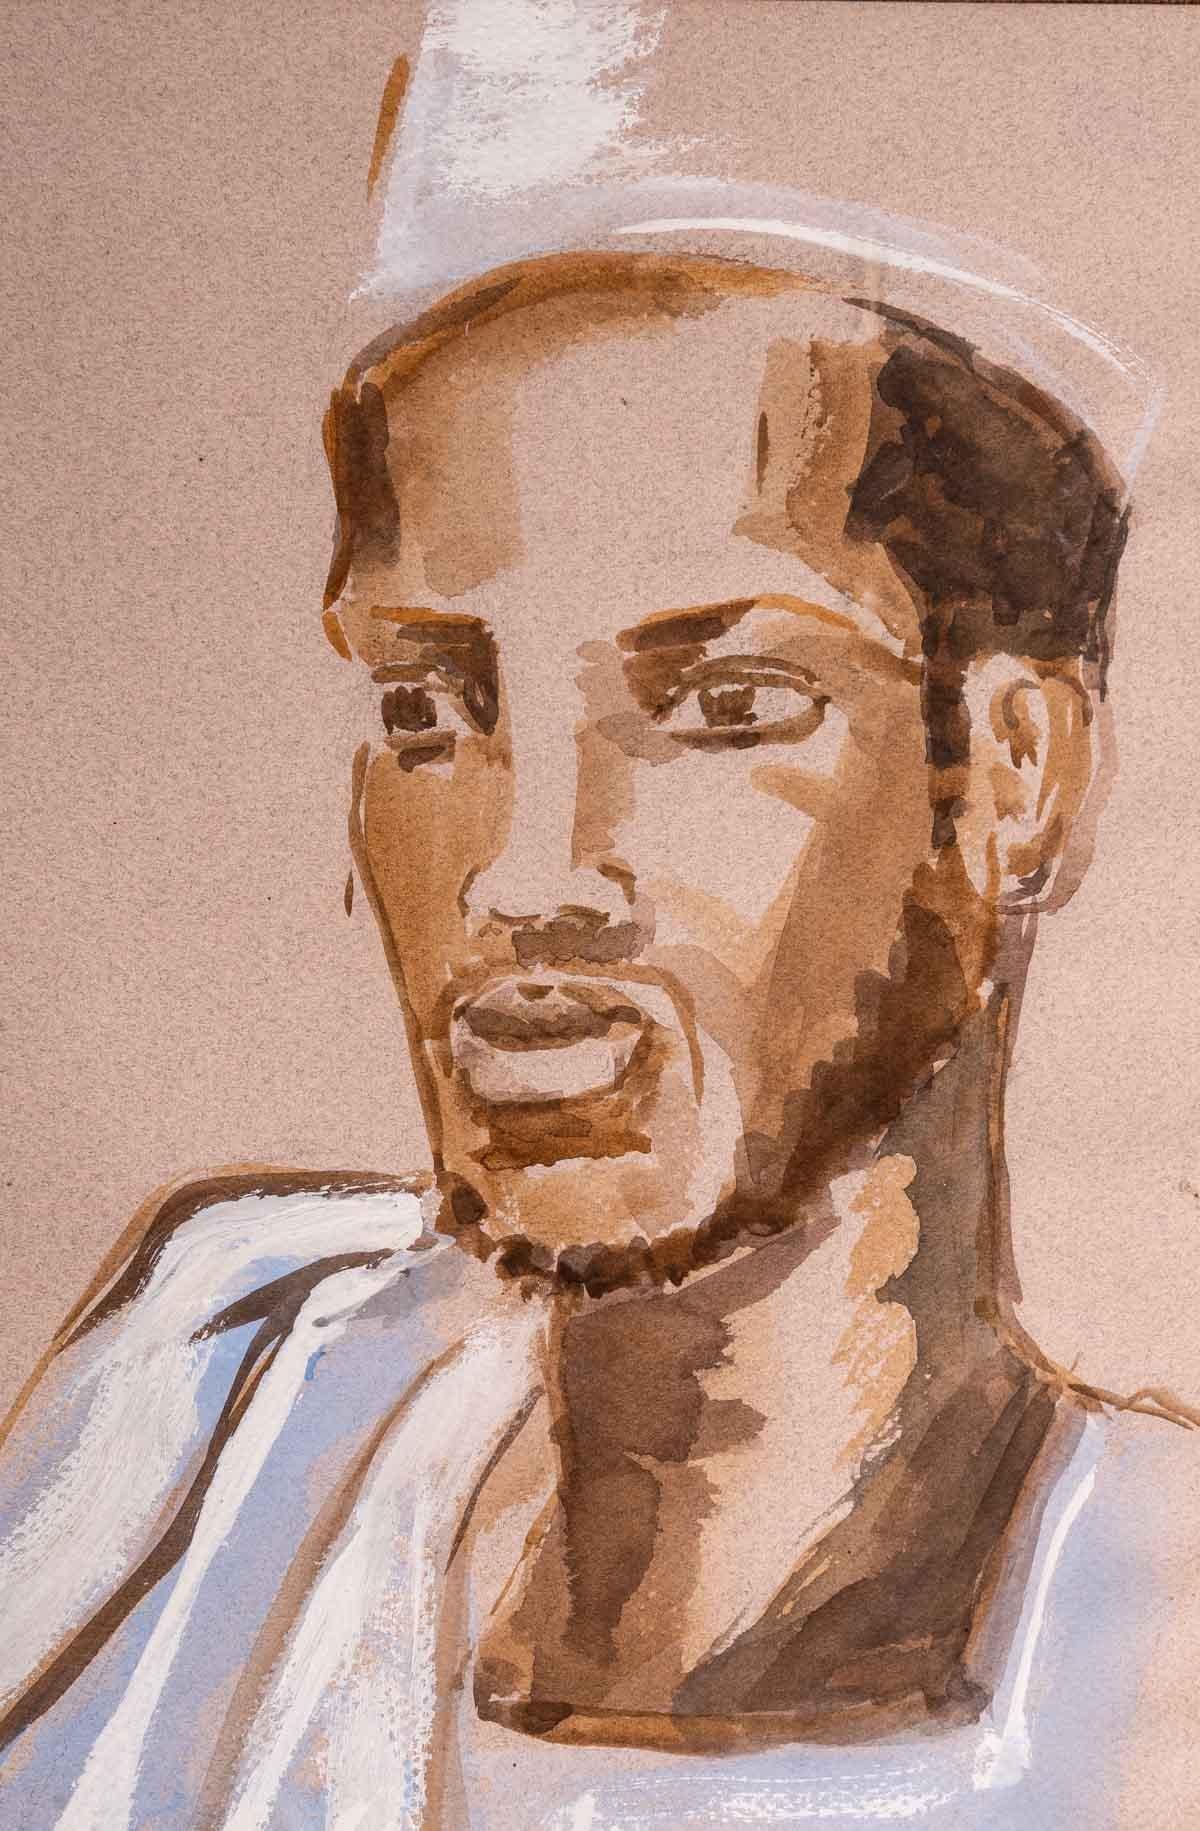 Portrait of an African, 20th century.
Watercolour on paper
Evelyne Luez, Paris school.
Measures: H: 55 cm, W: 45 cm, D: 1.5 cm.